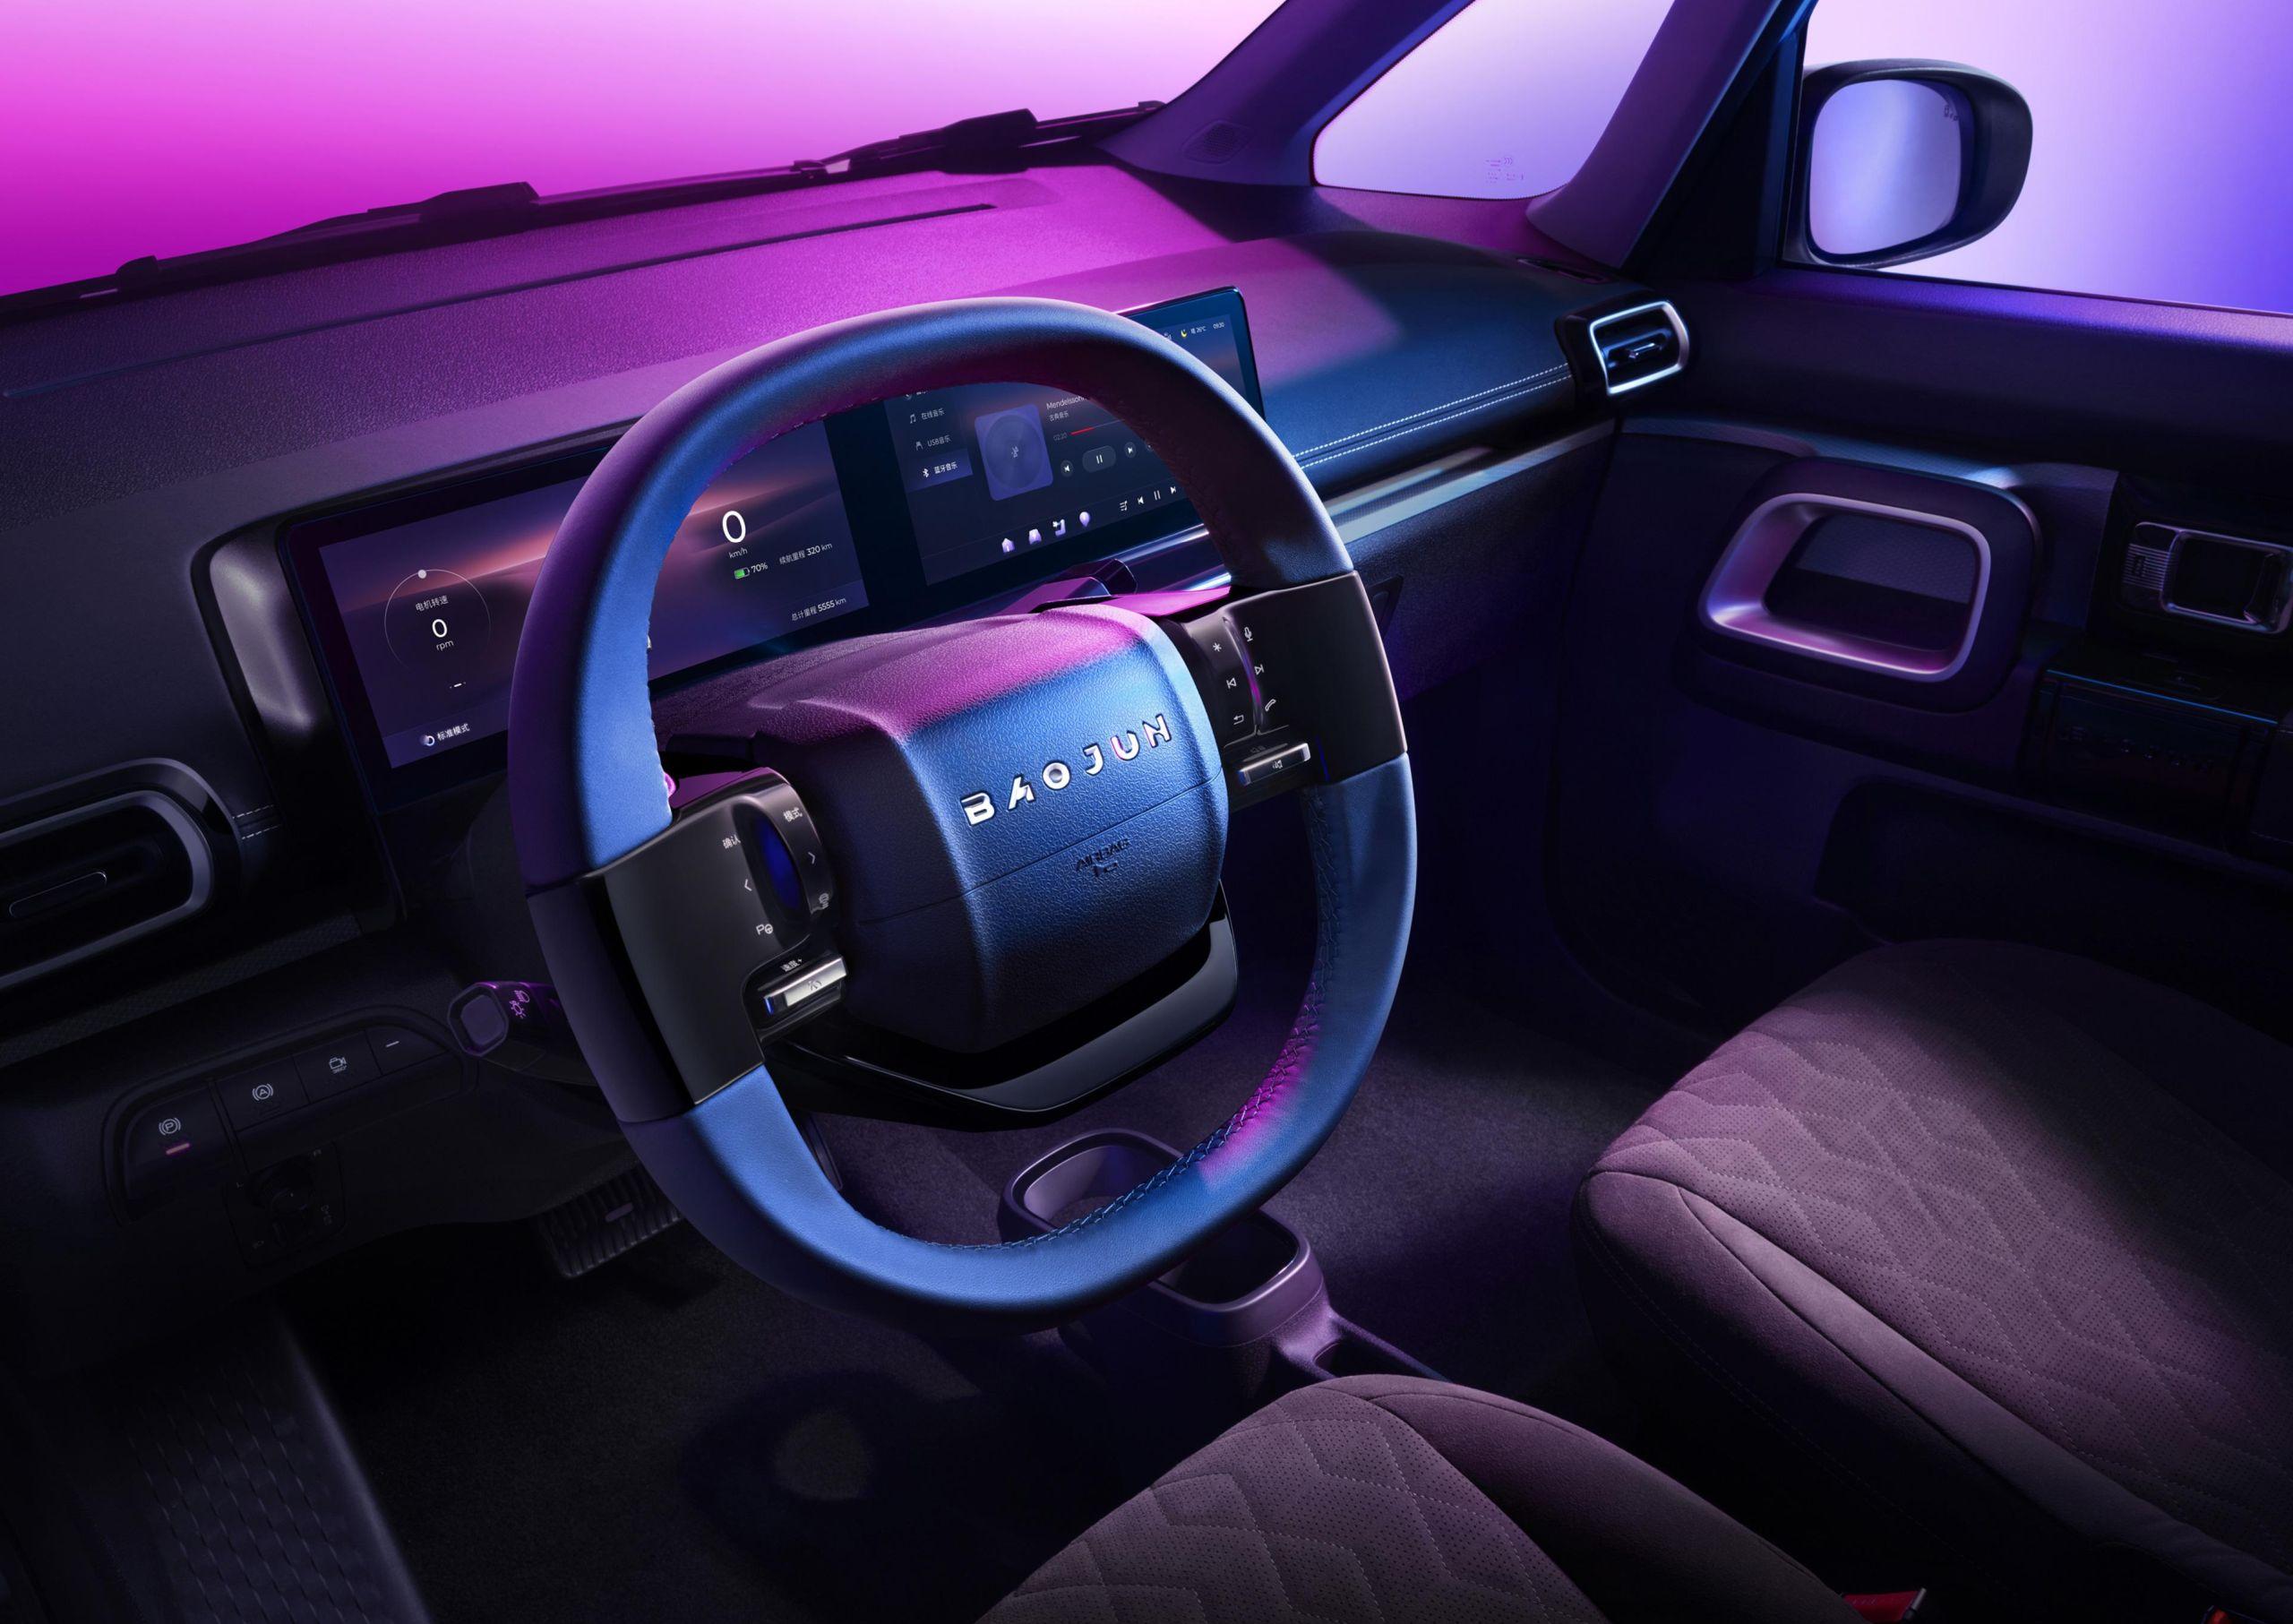 2023-baojun-kiwi-ev-steering-wheel